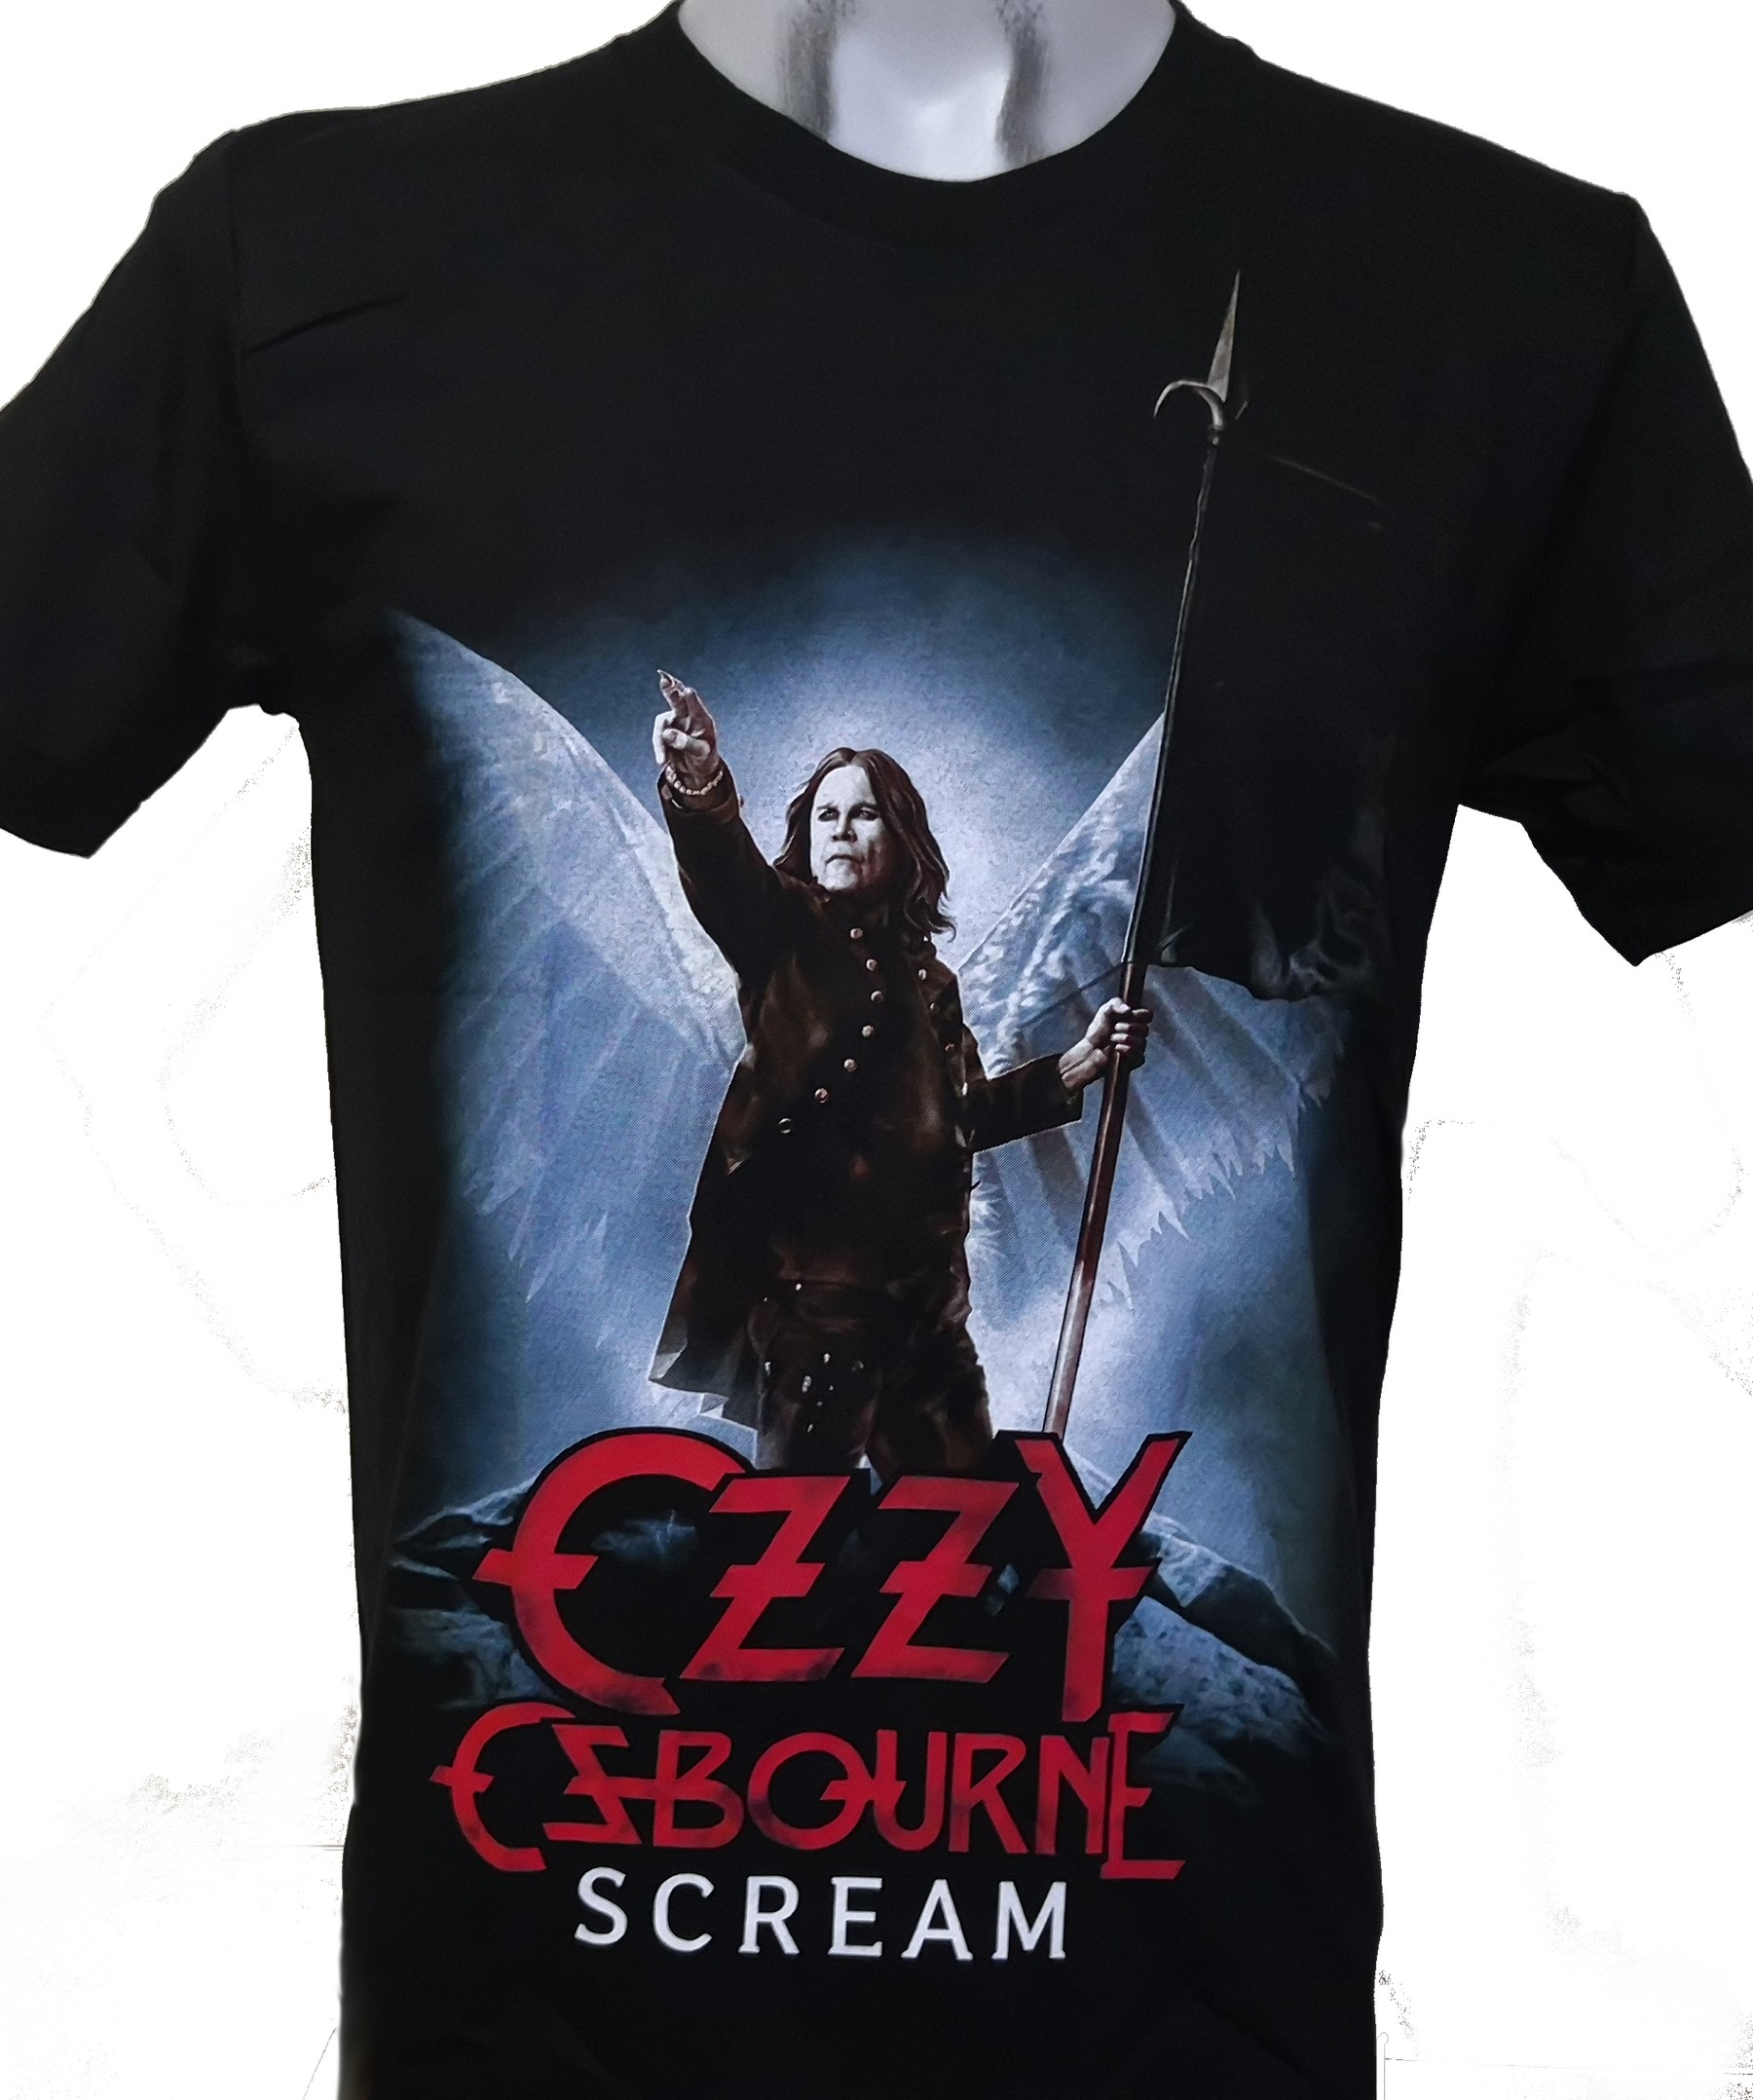 On Sale XXL XXXL Ozzy Osbourne Scream T-Shirt Size S M 2XL 3XL New